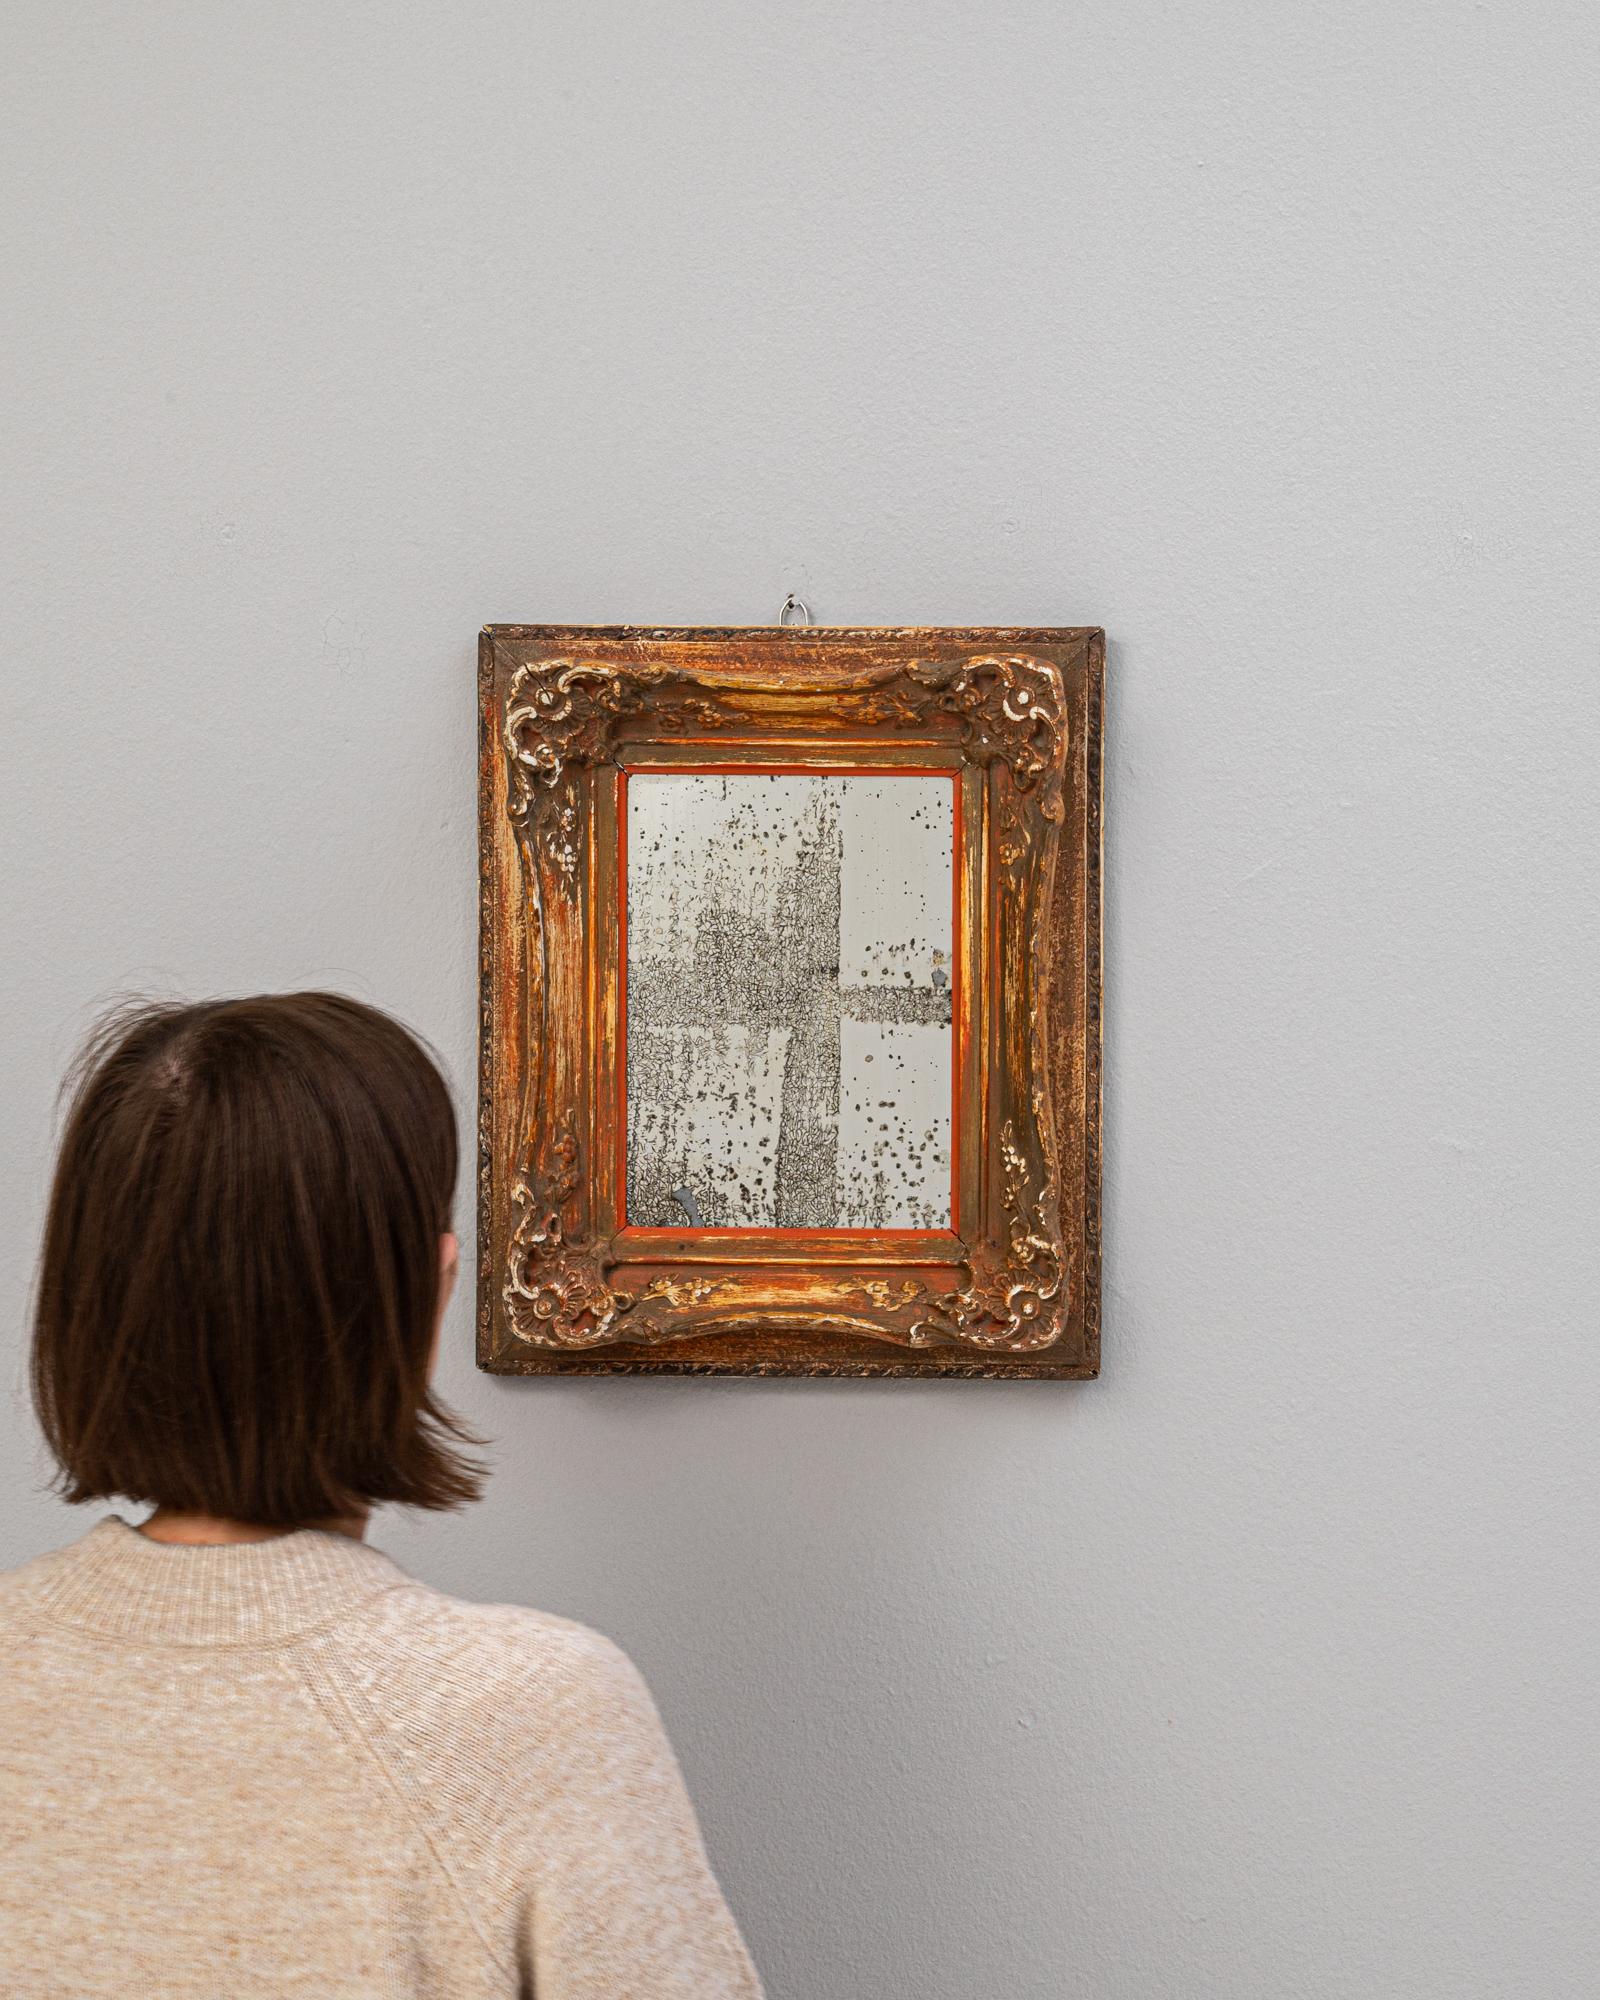 Dieser bezaubernde französische Holzspiegel aus dem 19. Jahrhundert ist eine kunstvolle Mischung aus Rustikalem und Raffiniertem. Der Spiegel selbst, der mit dem sanften Verfall der Versilberung befleckt ist, birgt eine geisterhafte Schönheit - ein